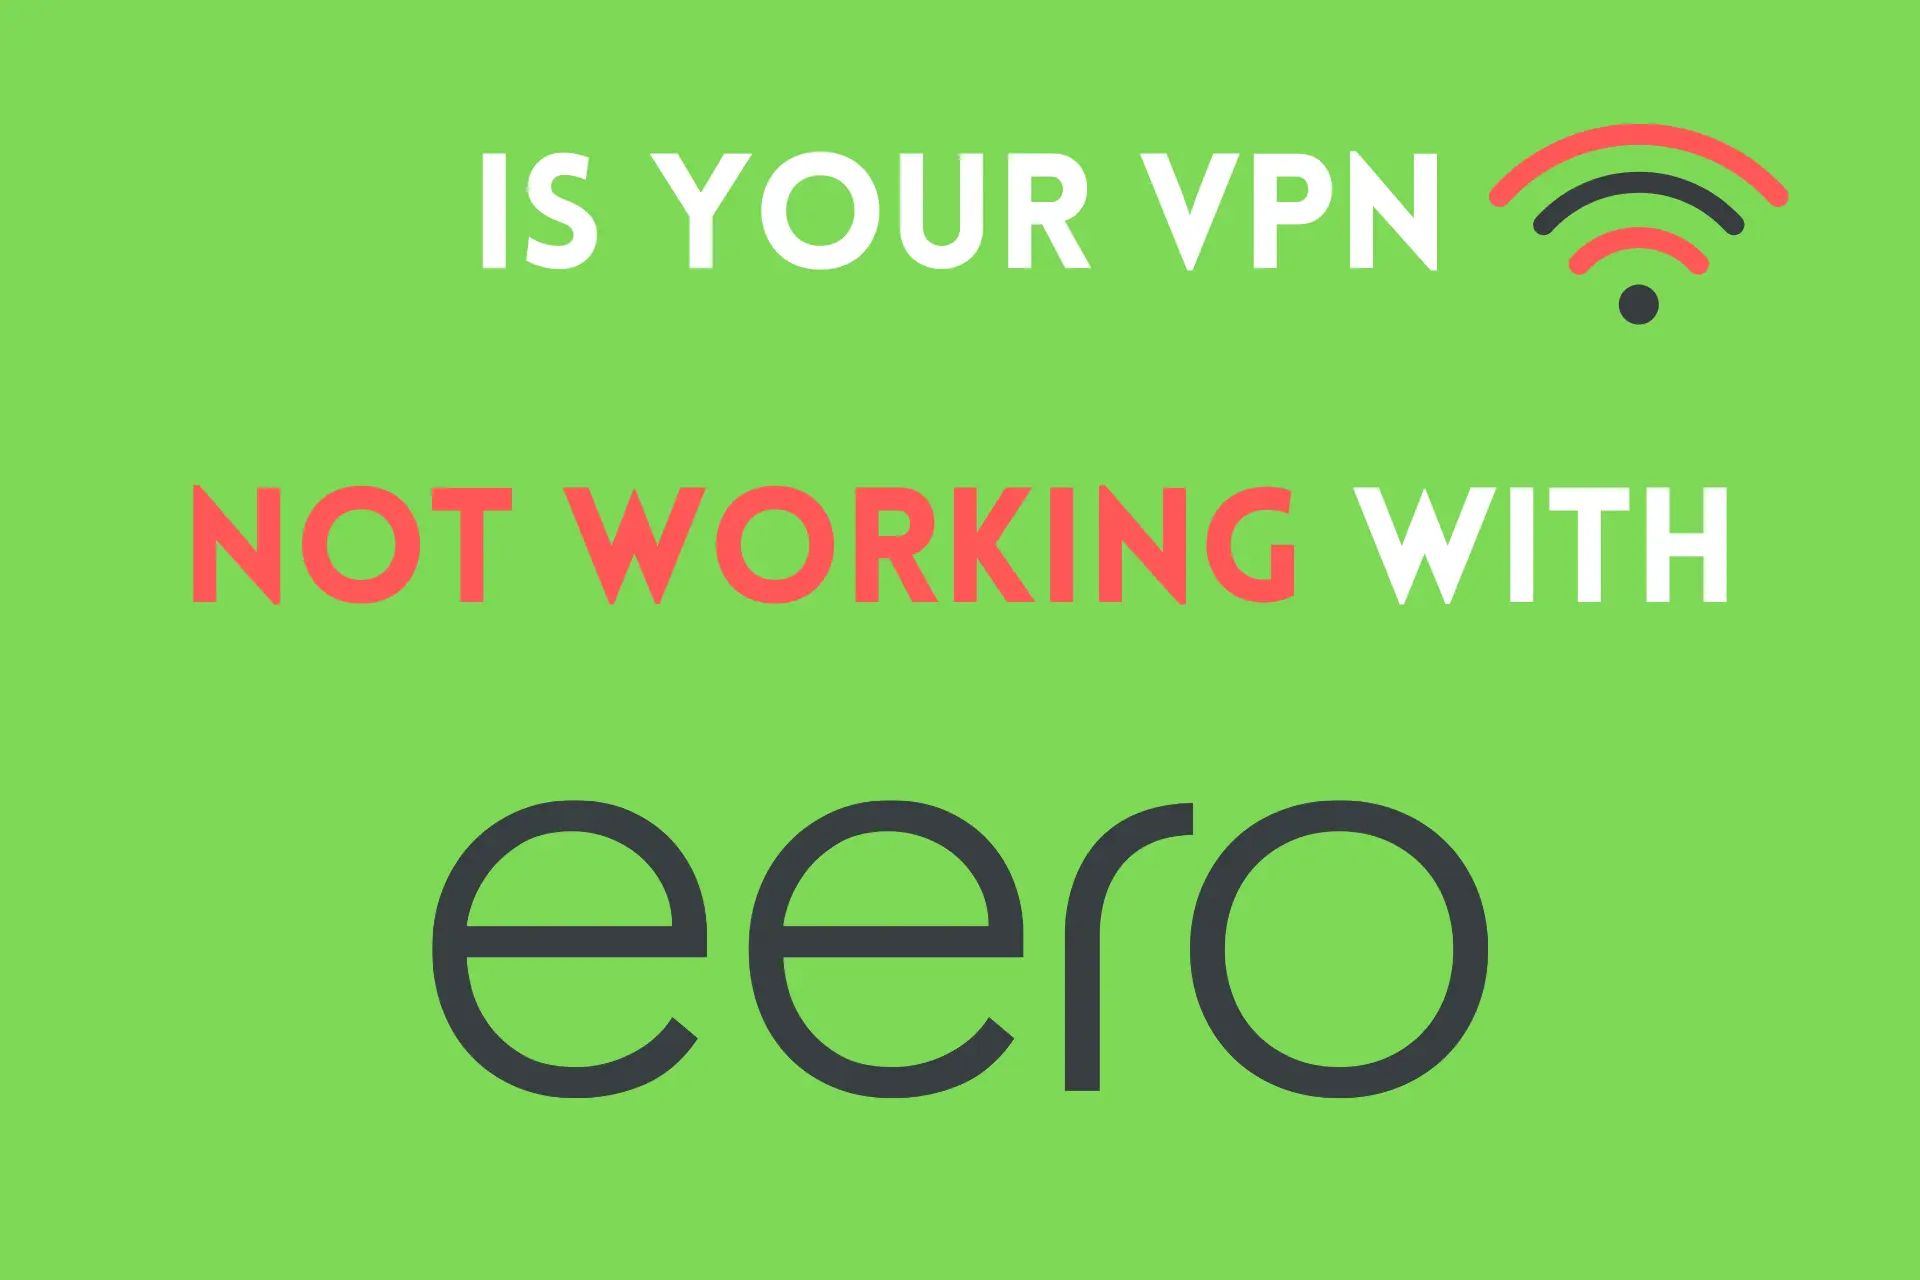 vpn not working with eero